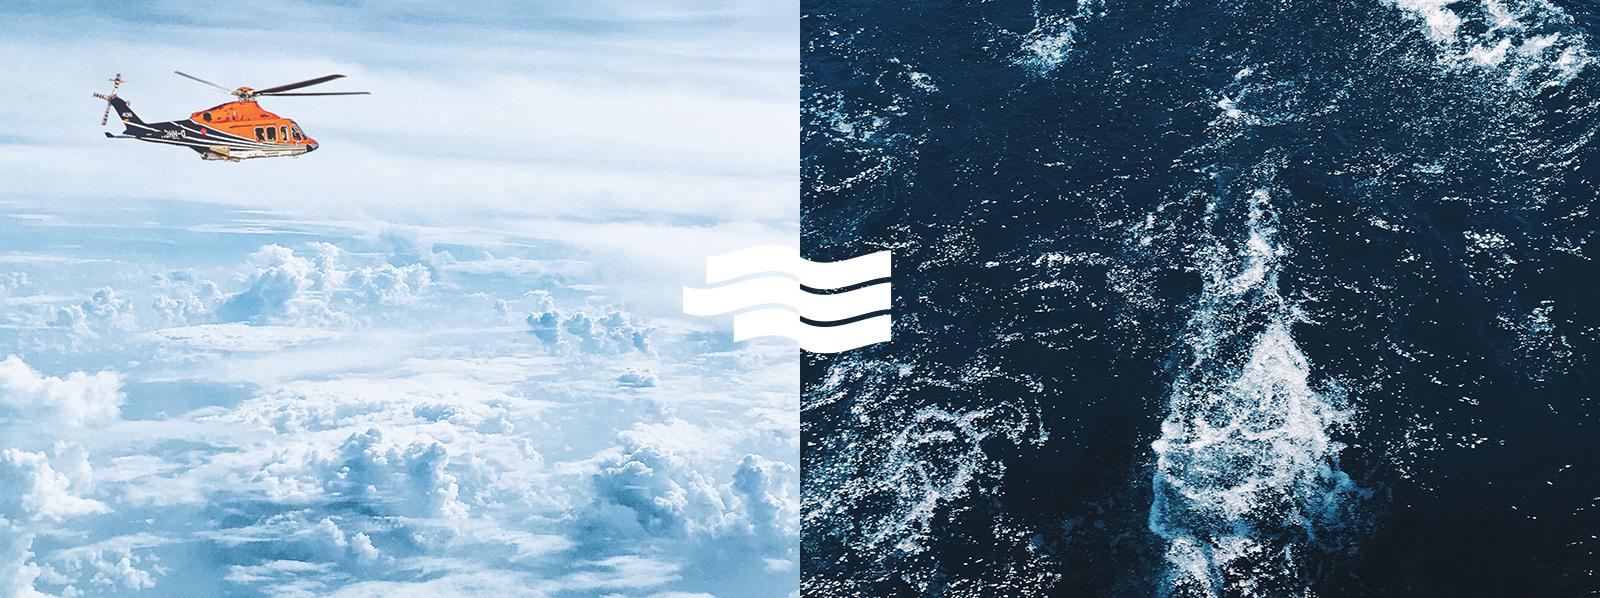 Logoherleitung, Wolken als Darstellung des Windes und Wellen für Wasser